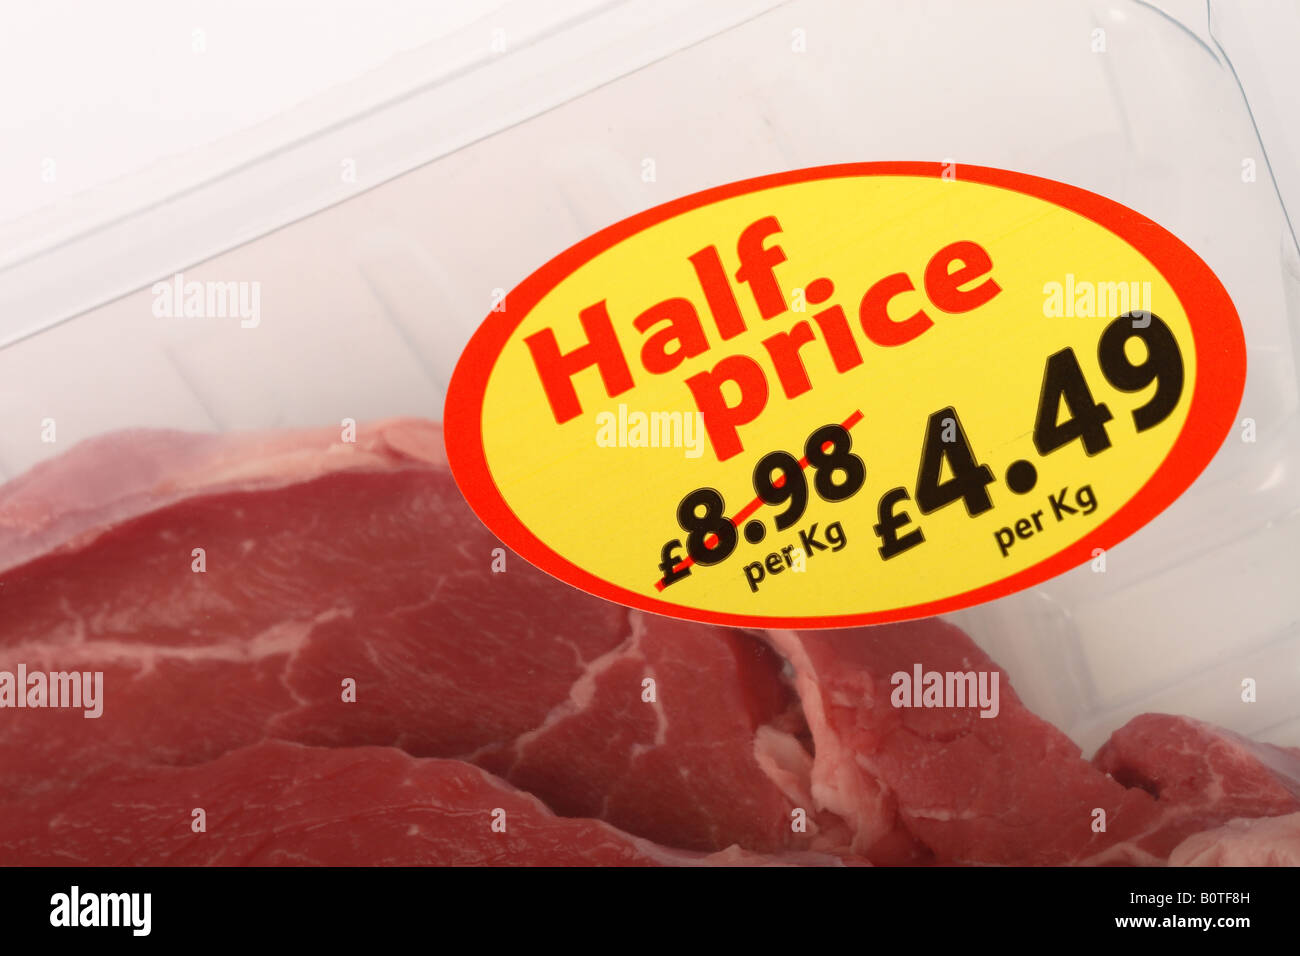 Supermarkt reduziert Preisvorteil zum Halbpreis Steak Fleisch essen Schnäppchen Stockfoto